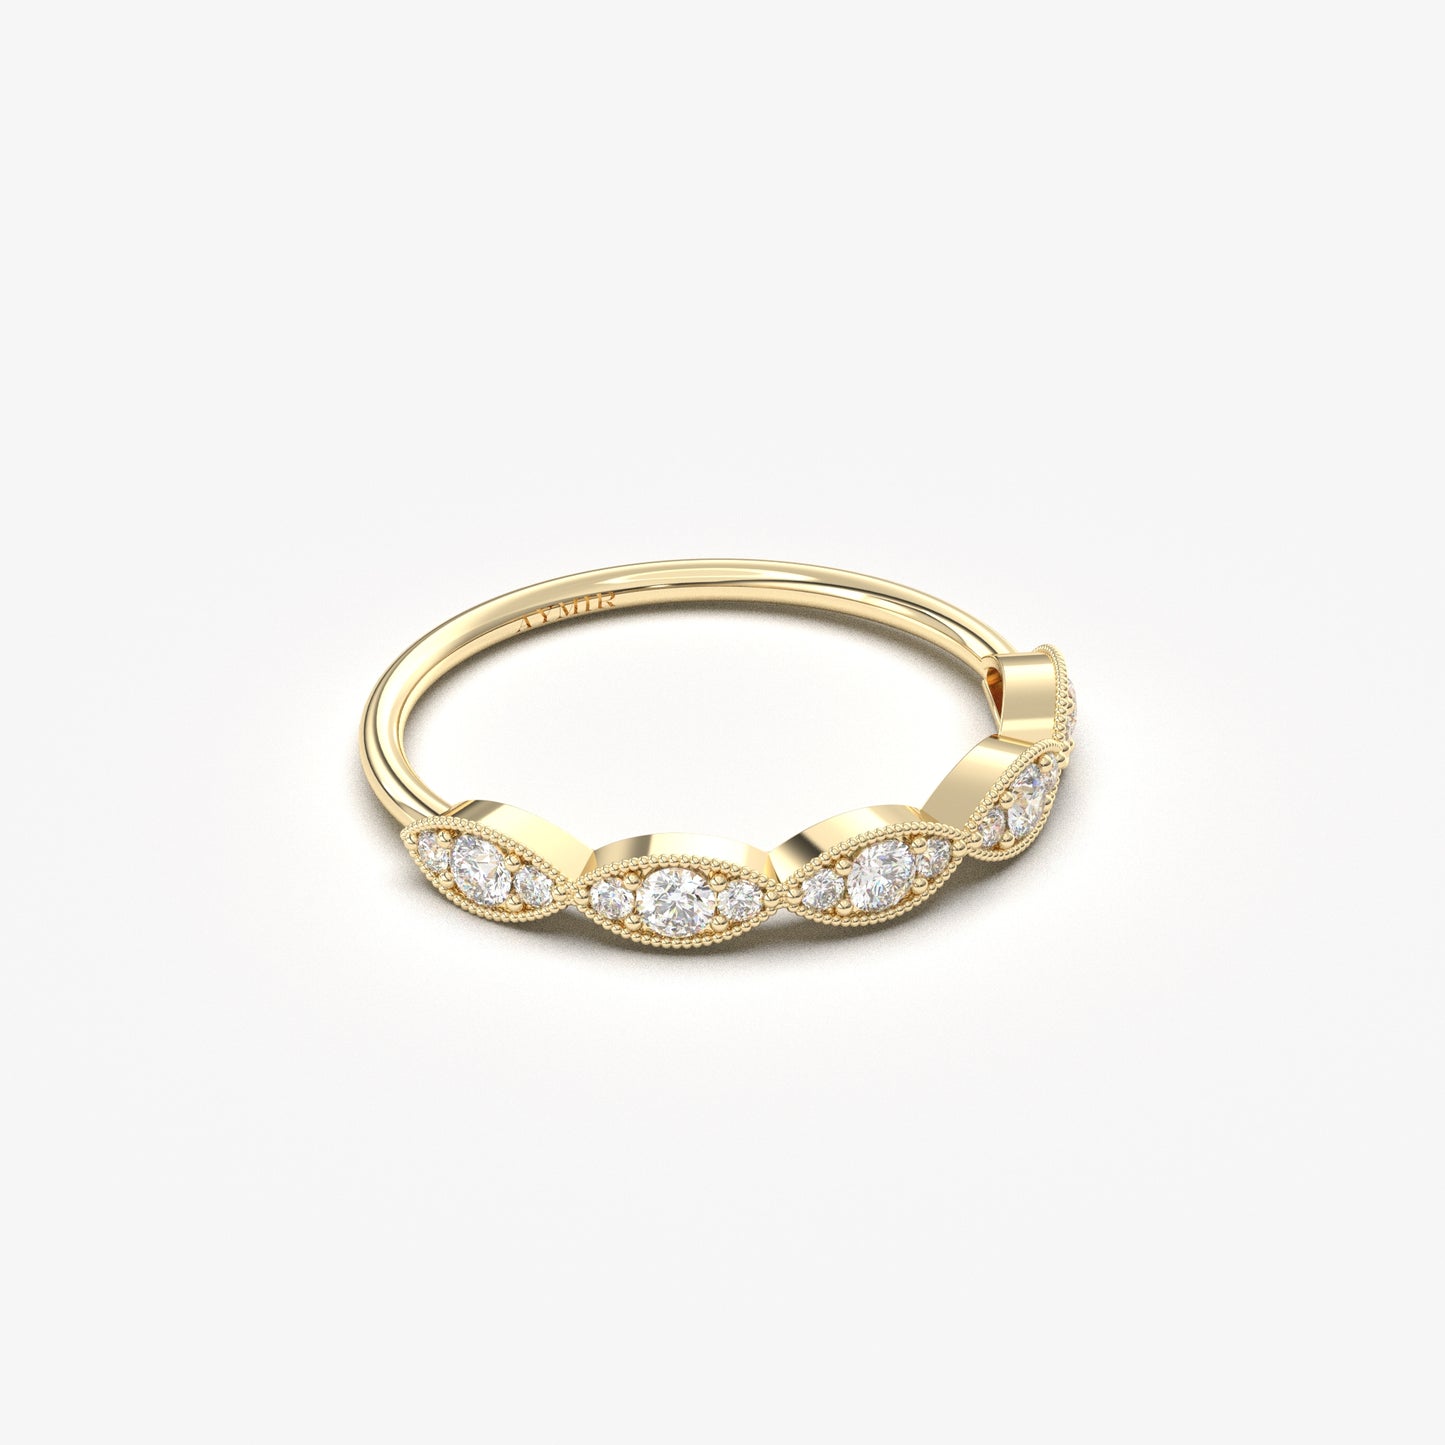 10K Gold Unique Vintage Ring - 2S15